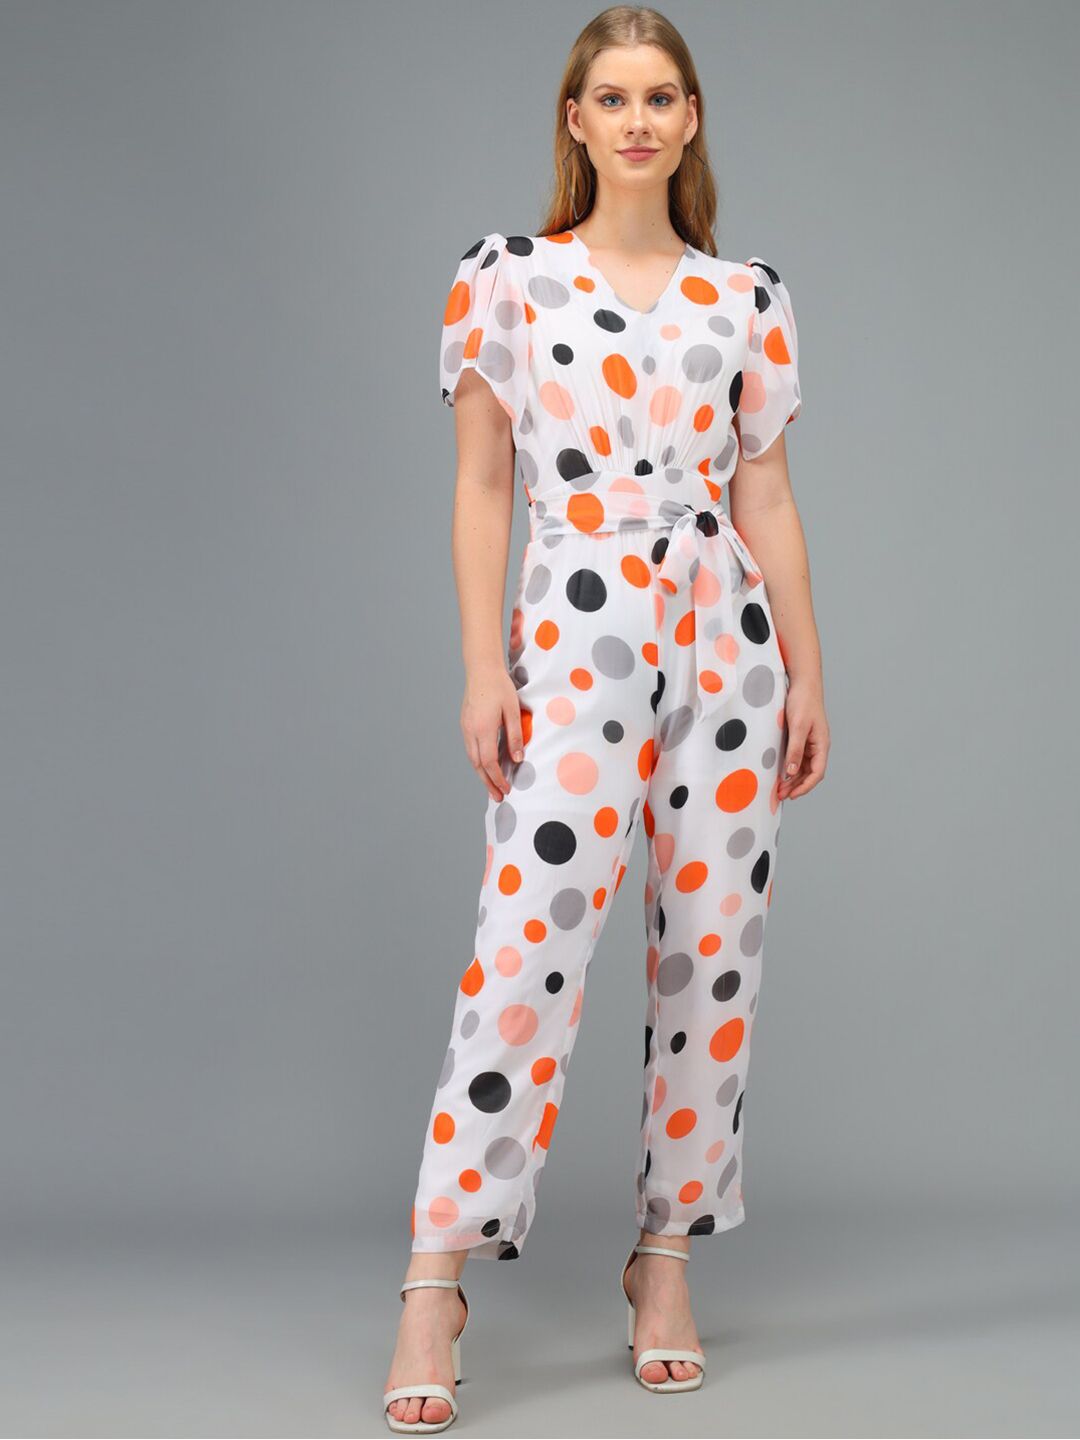 Kannan Orange & Grey Polka Dots Printed Basic Jumpsuit Price in India